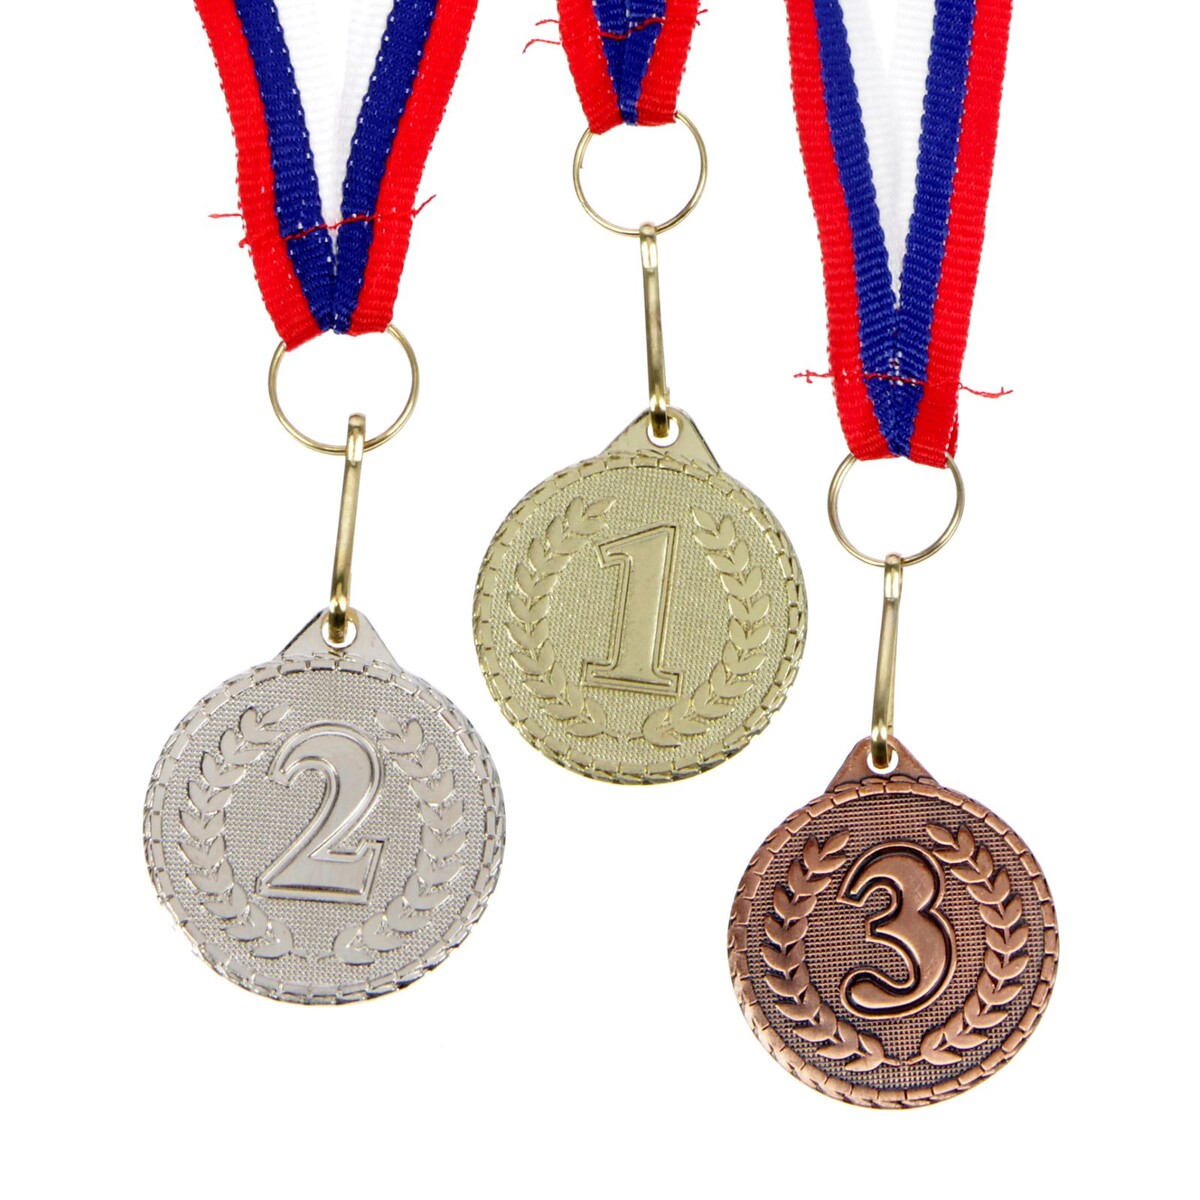 Медаль призовая 041 диам 3,2 см. 3 место. цвет бронз. с лентой медаль призовая 041 диам 3 2 см 3 место бронз с лентой